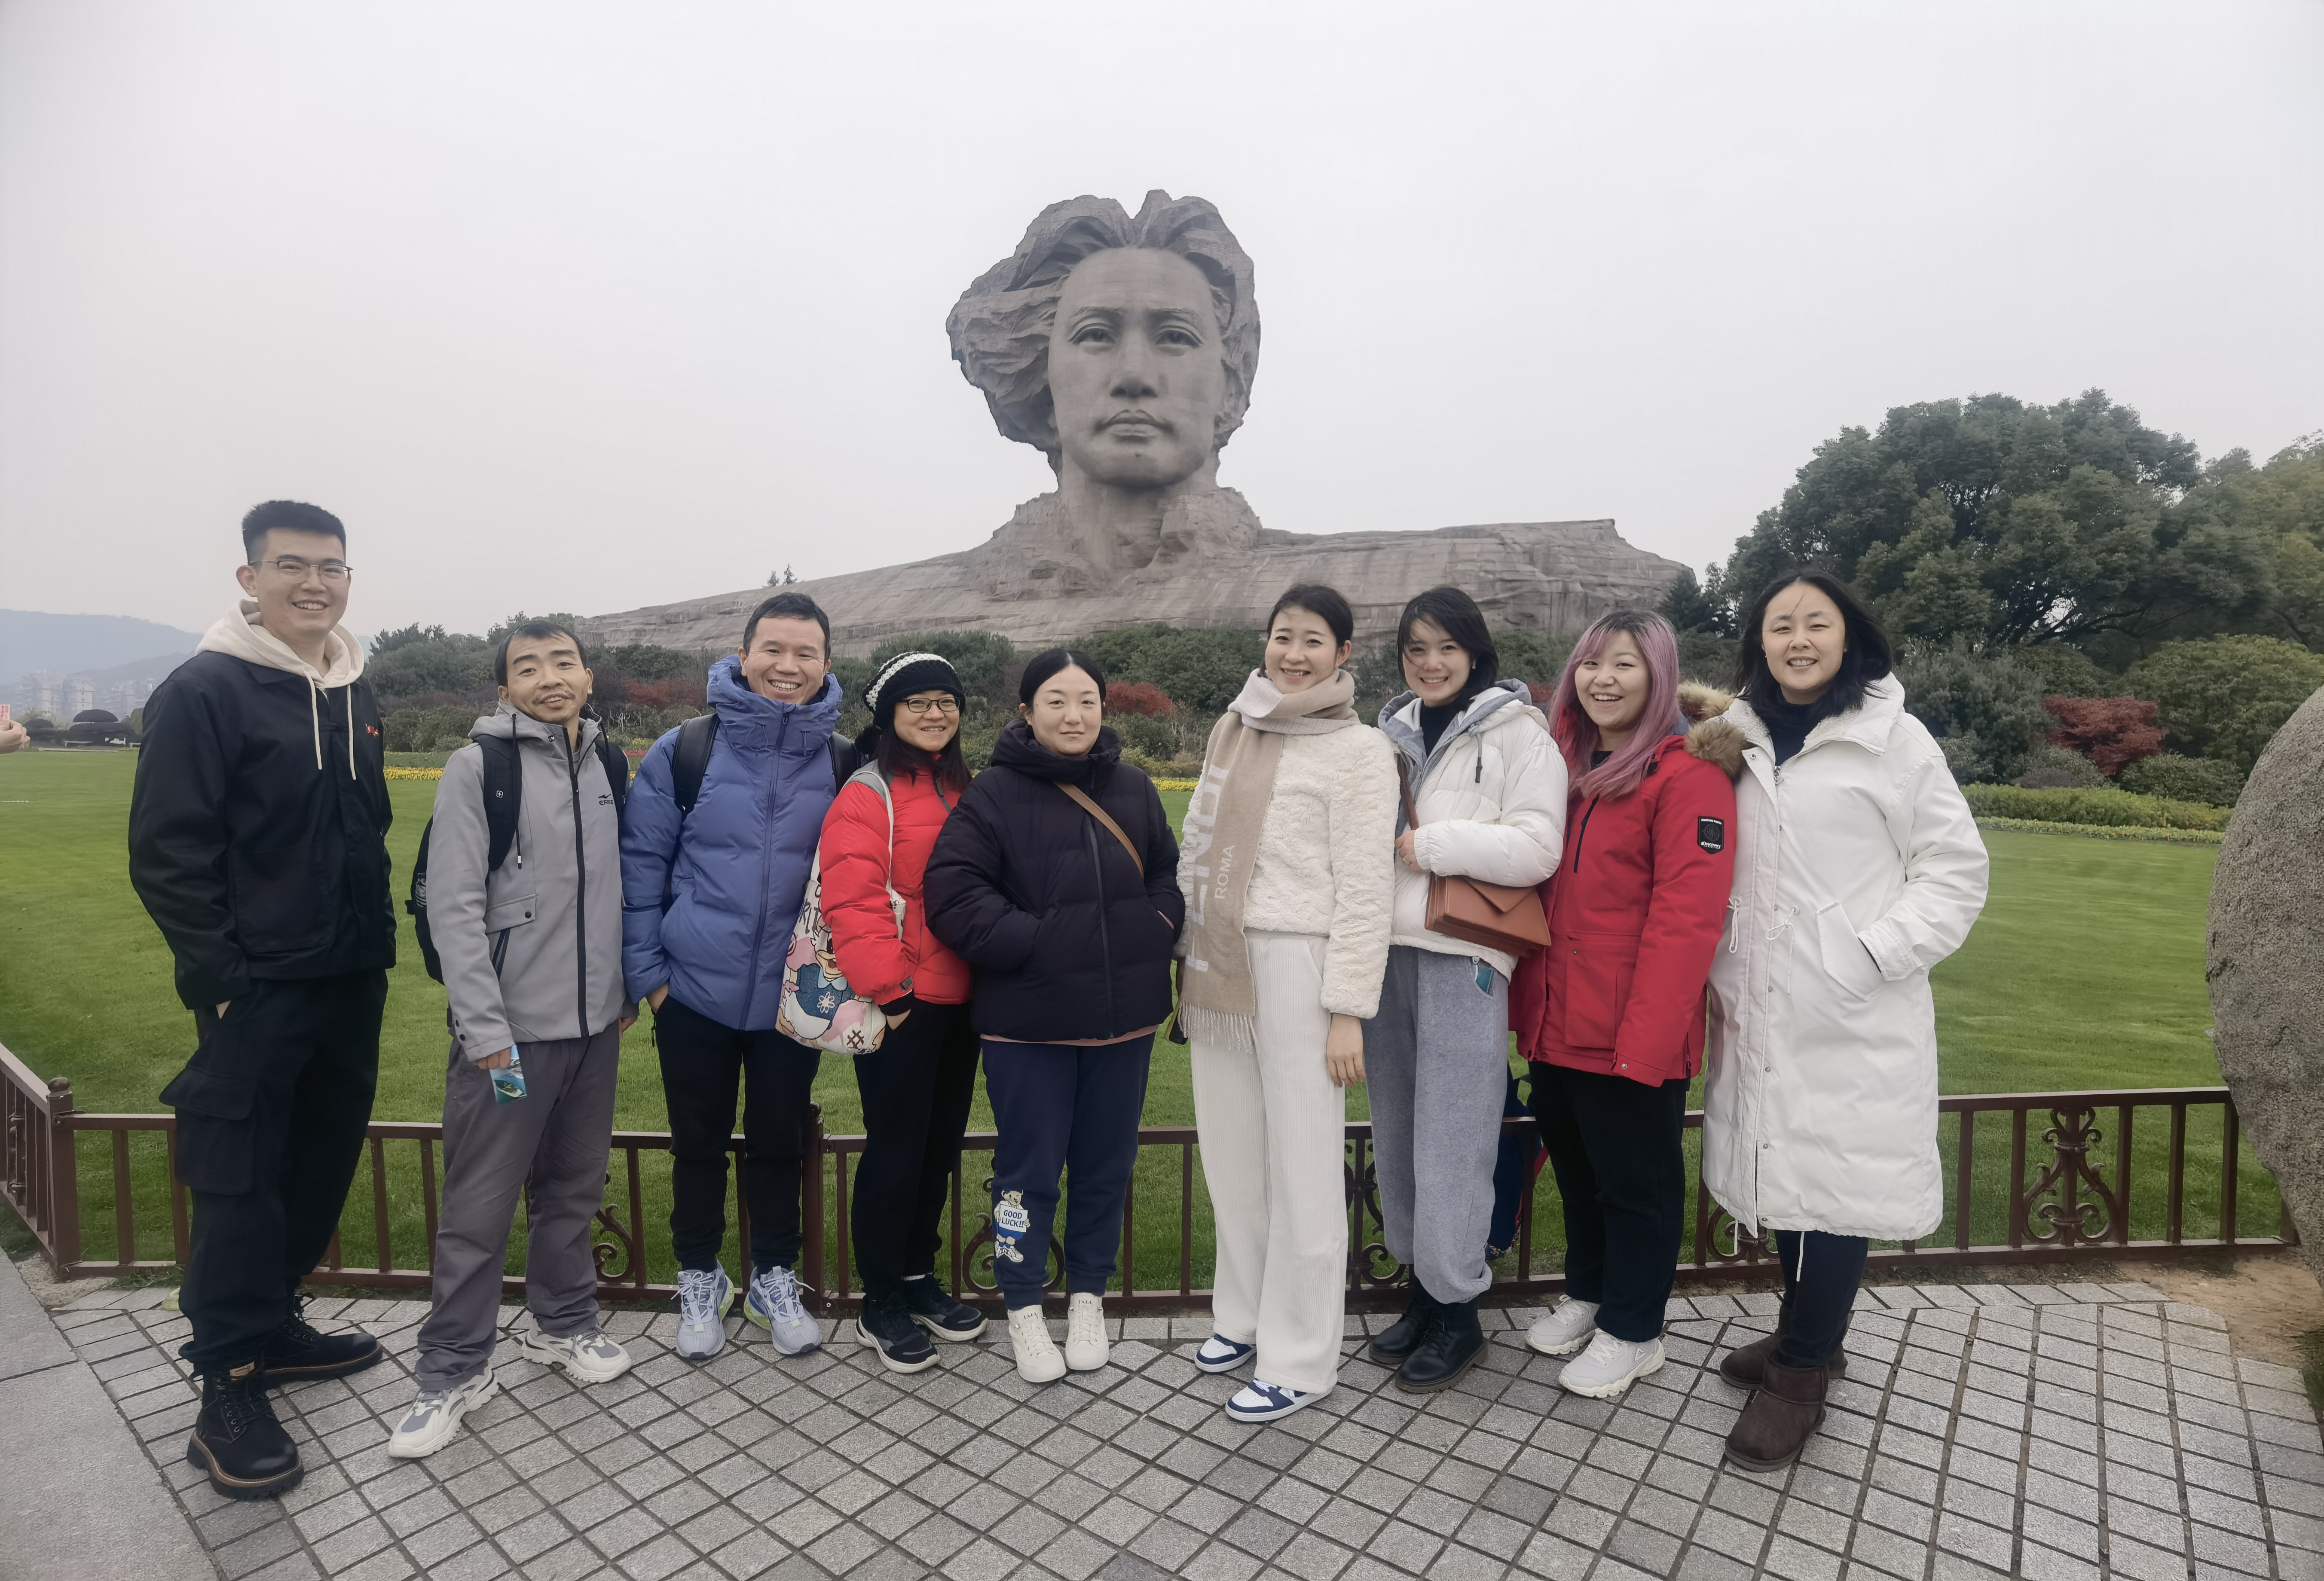 Excursia de team building a lui Chiswear din Changsha a fost încheiată cu succes